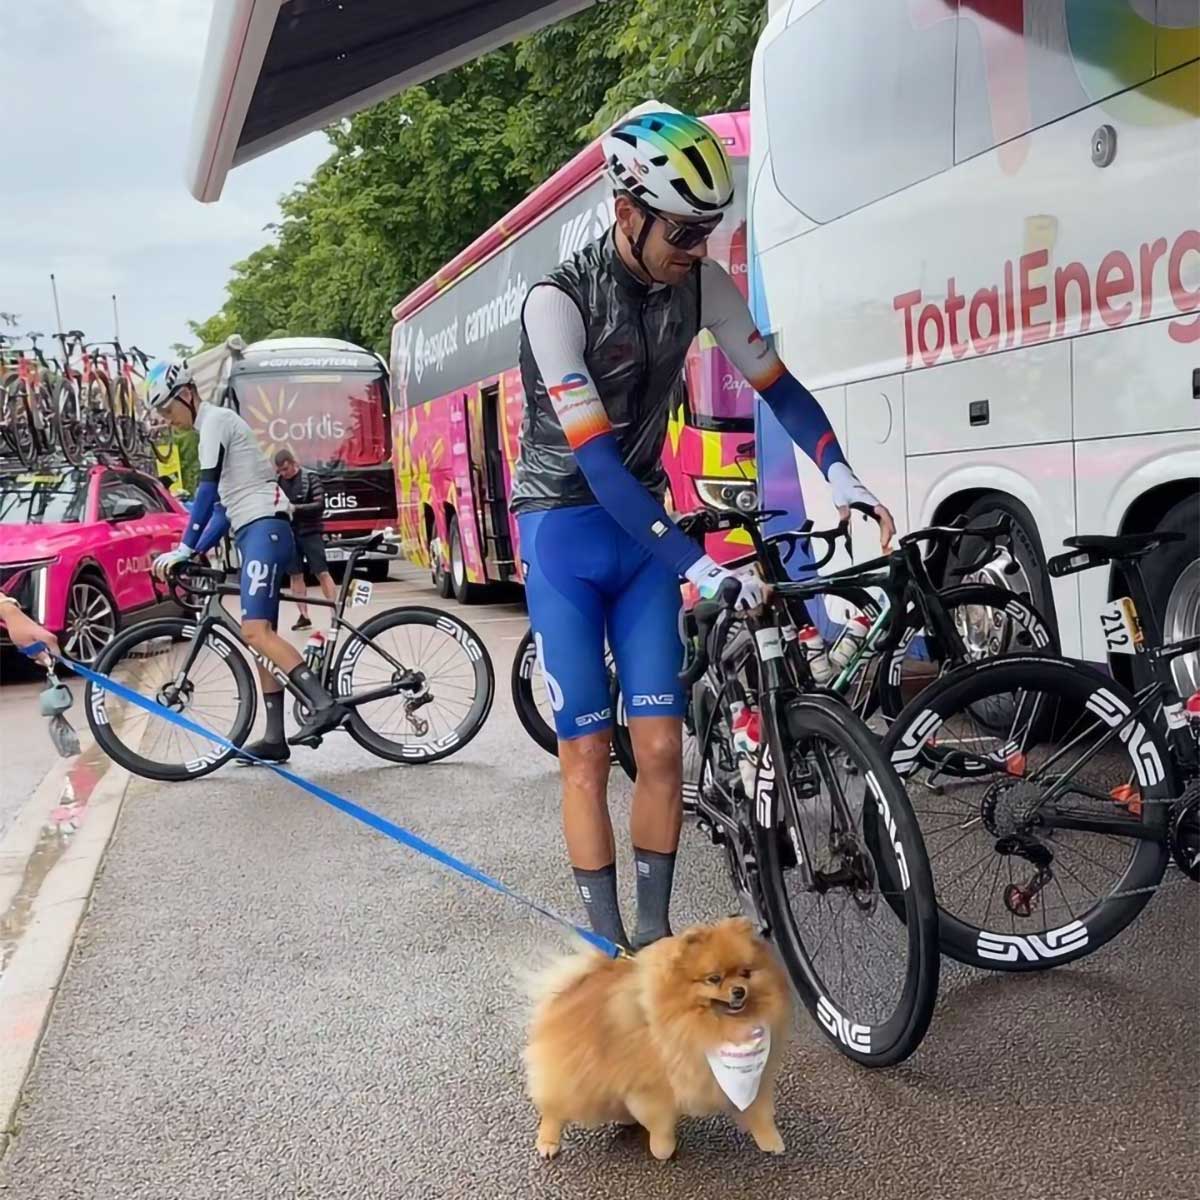 El Tour de Francia no se libra de los ladrones: roban las bicicletas del Team TotalEnergies valoradas en mas de 150.000 euros